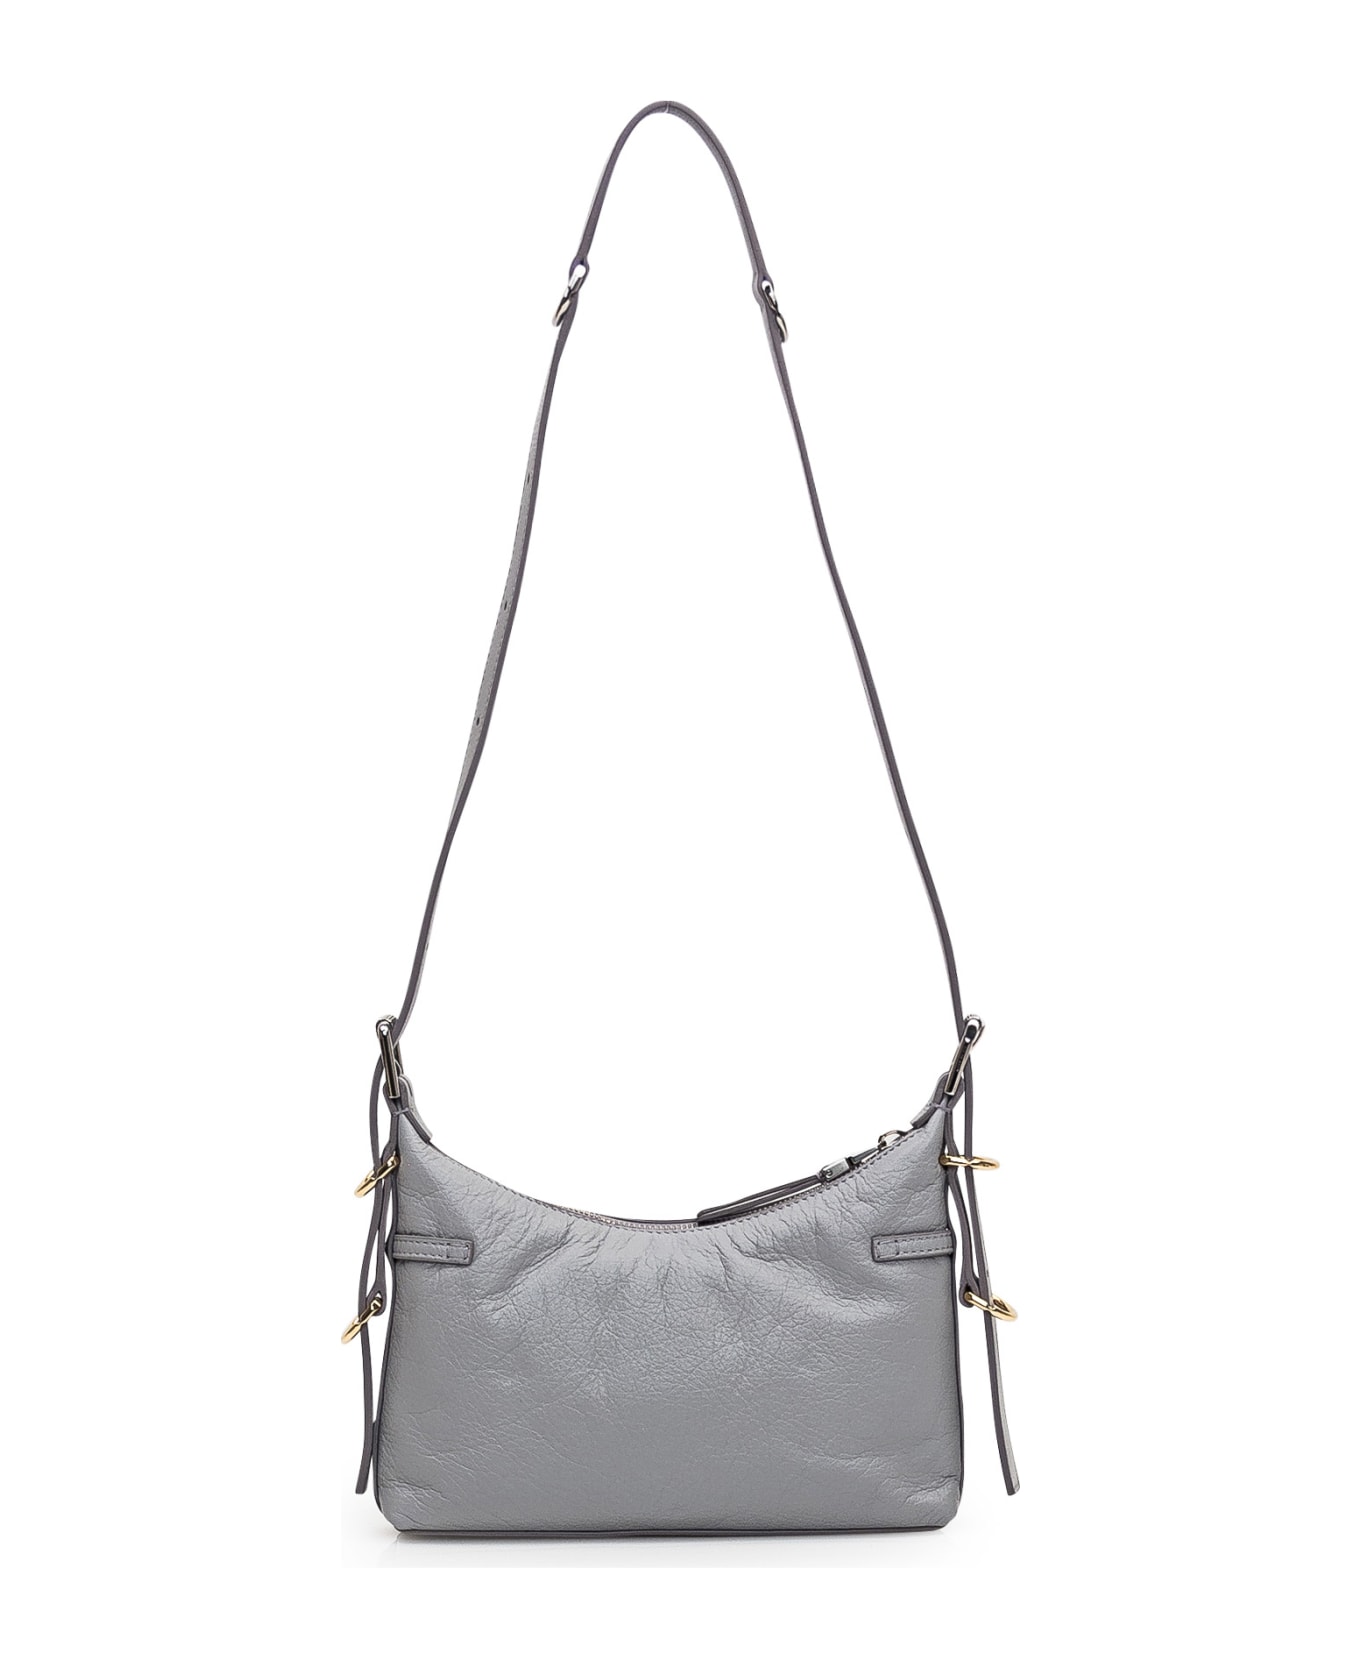 Givenchy Voyou Shoulder Bag - Light Grey